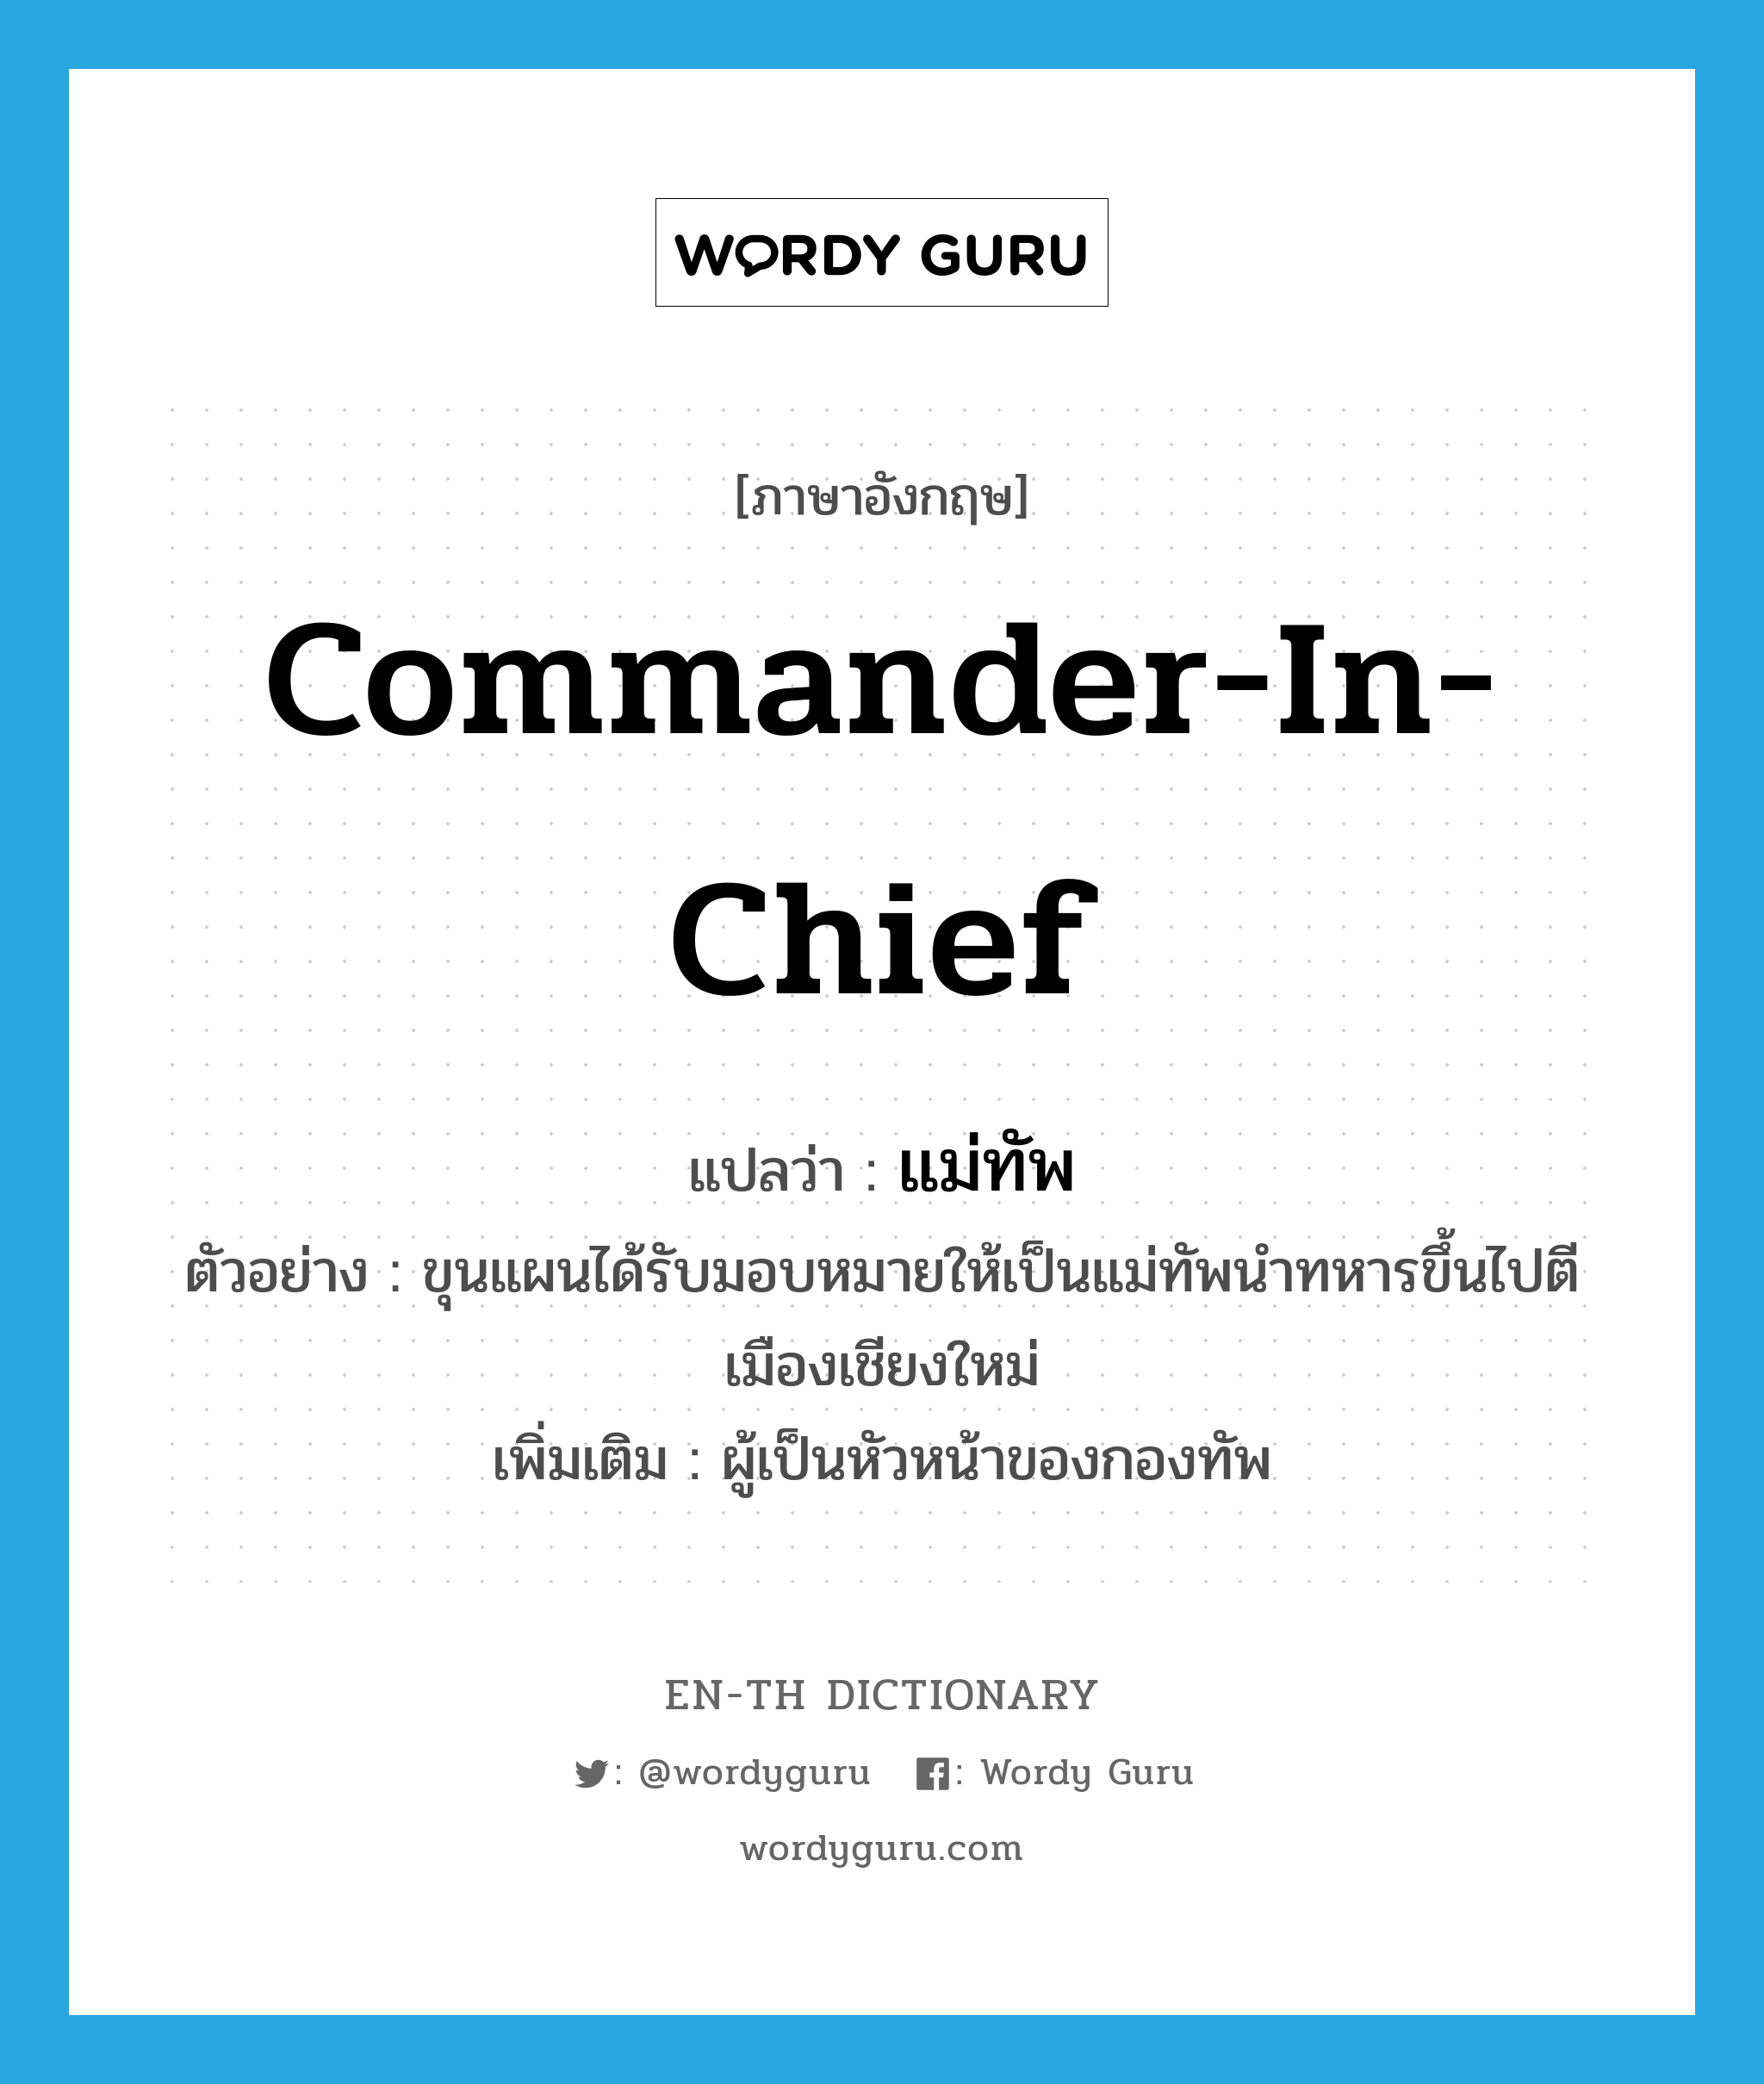 commander in chief แปลว่า?, คำศัพท์ภาษาอังกฤษ commander-in-chief แปลว่า แม่ทัพ ประเภท N ตัวอย่าง ขุนแผนได้รับมอบหมายให้เป็นแม่ทัพนำทหารขึ้นไปตีเมืองเชียงใหม่ เพิ่มเติม ผู้เป็นหัวหน้าของกองทัพ หมวด N